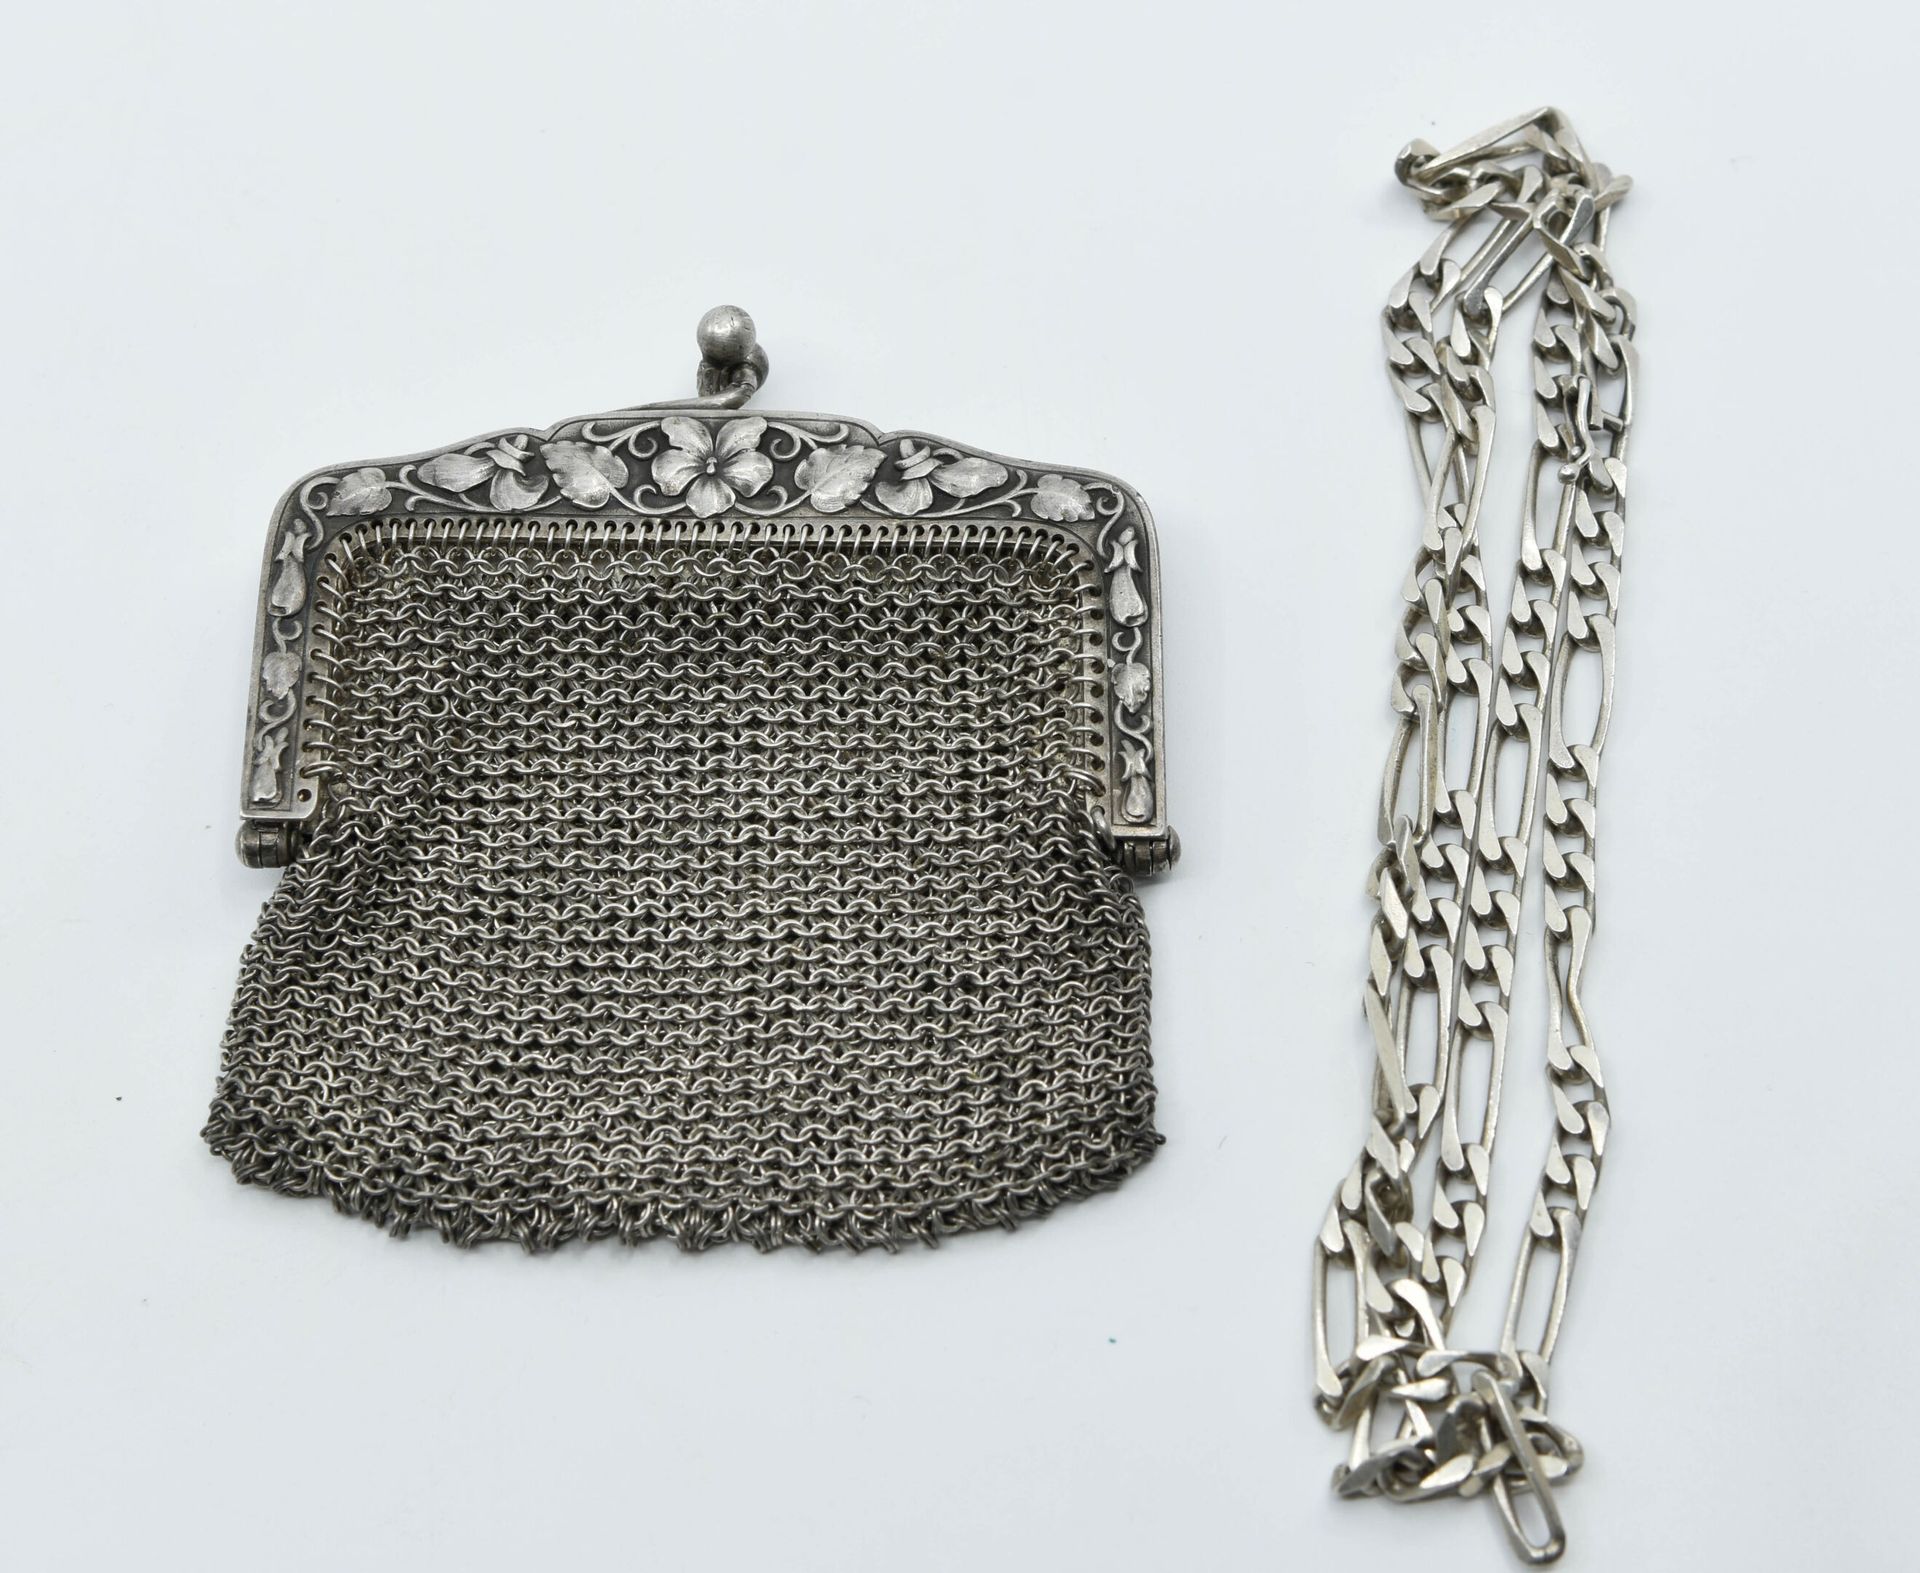 Null 银色和银色网状硬币钱包（800°/°），饰有叶子图案
约1900年
重量：61.5克
小事故

一条银质费加罗链，重量：19克